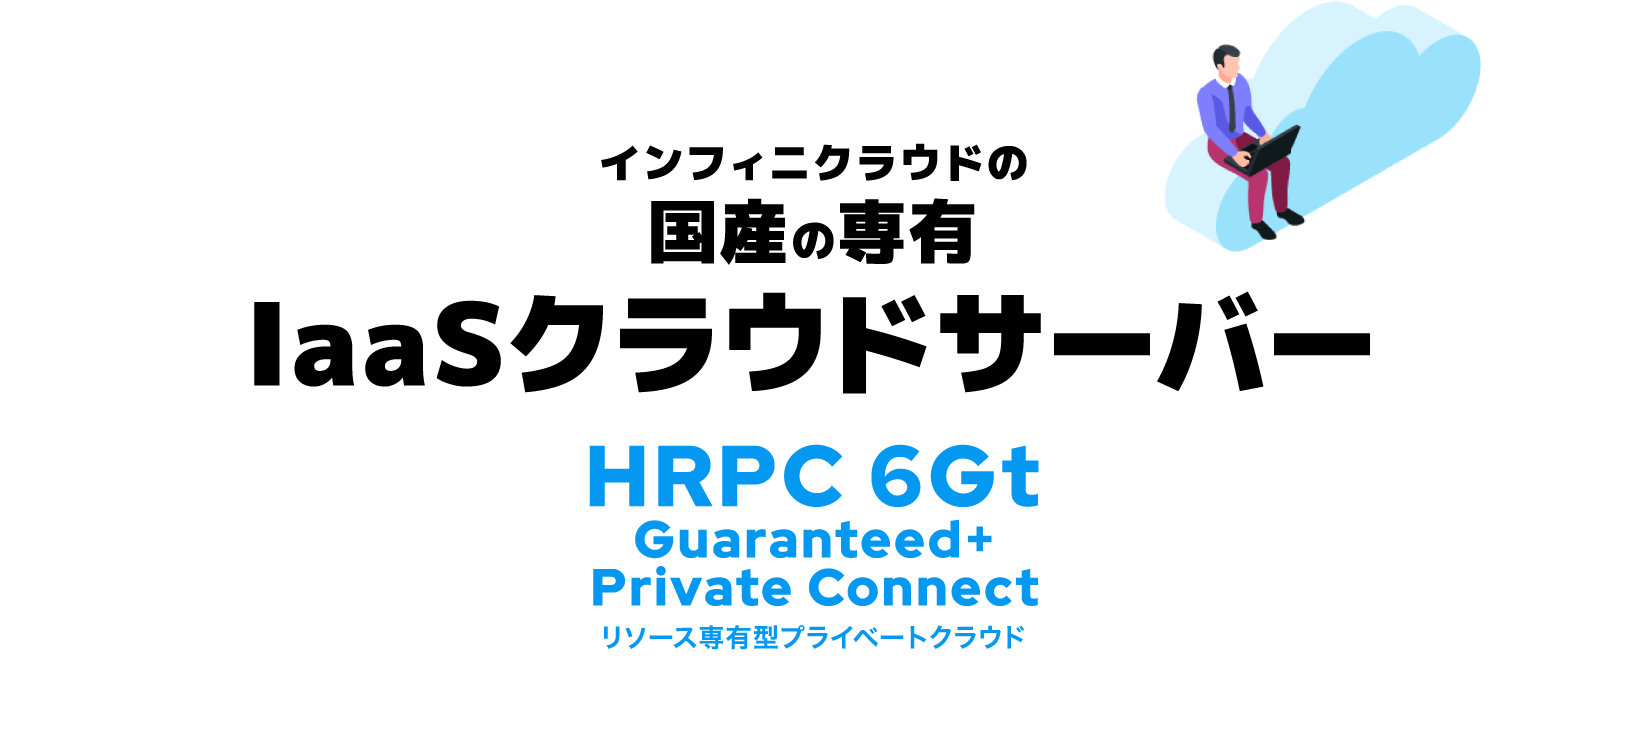 インフィニクラウドの 国産の専有 IaaSクラウドサーバー HRPC 6Gt Guaranteed+ Private Connect リソース専有型プライベートクラウド